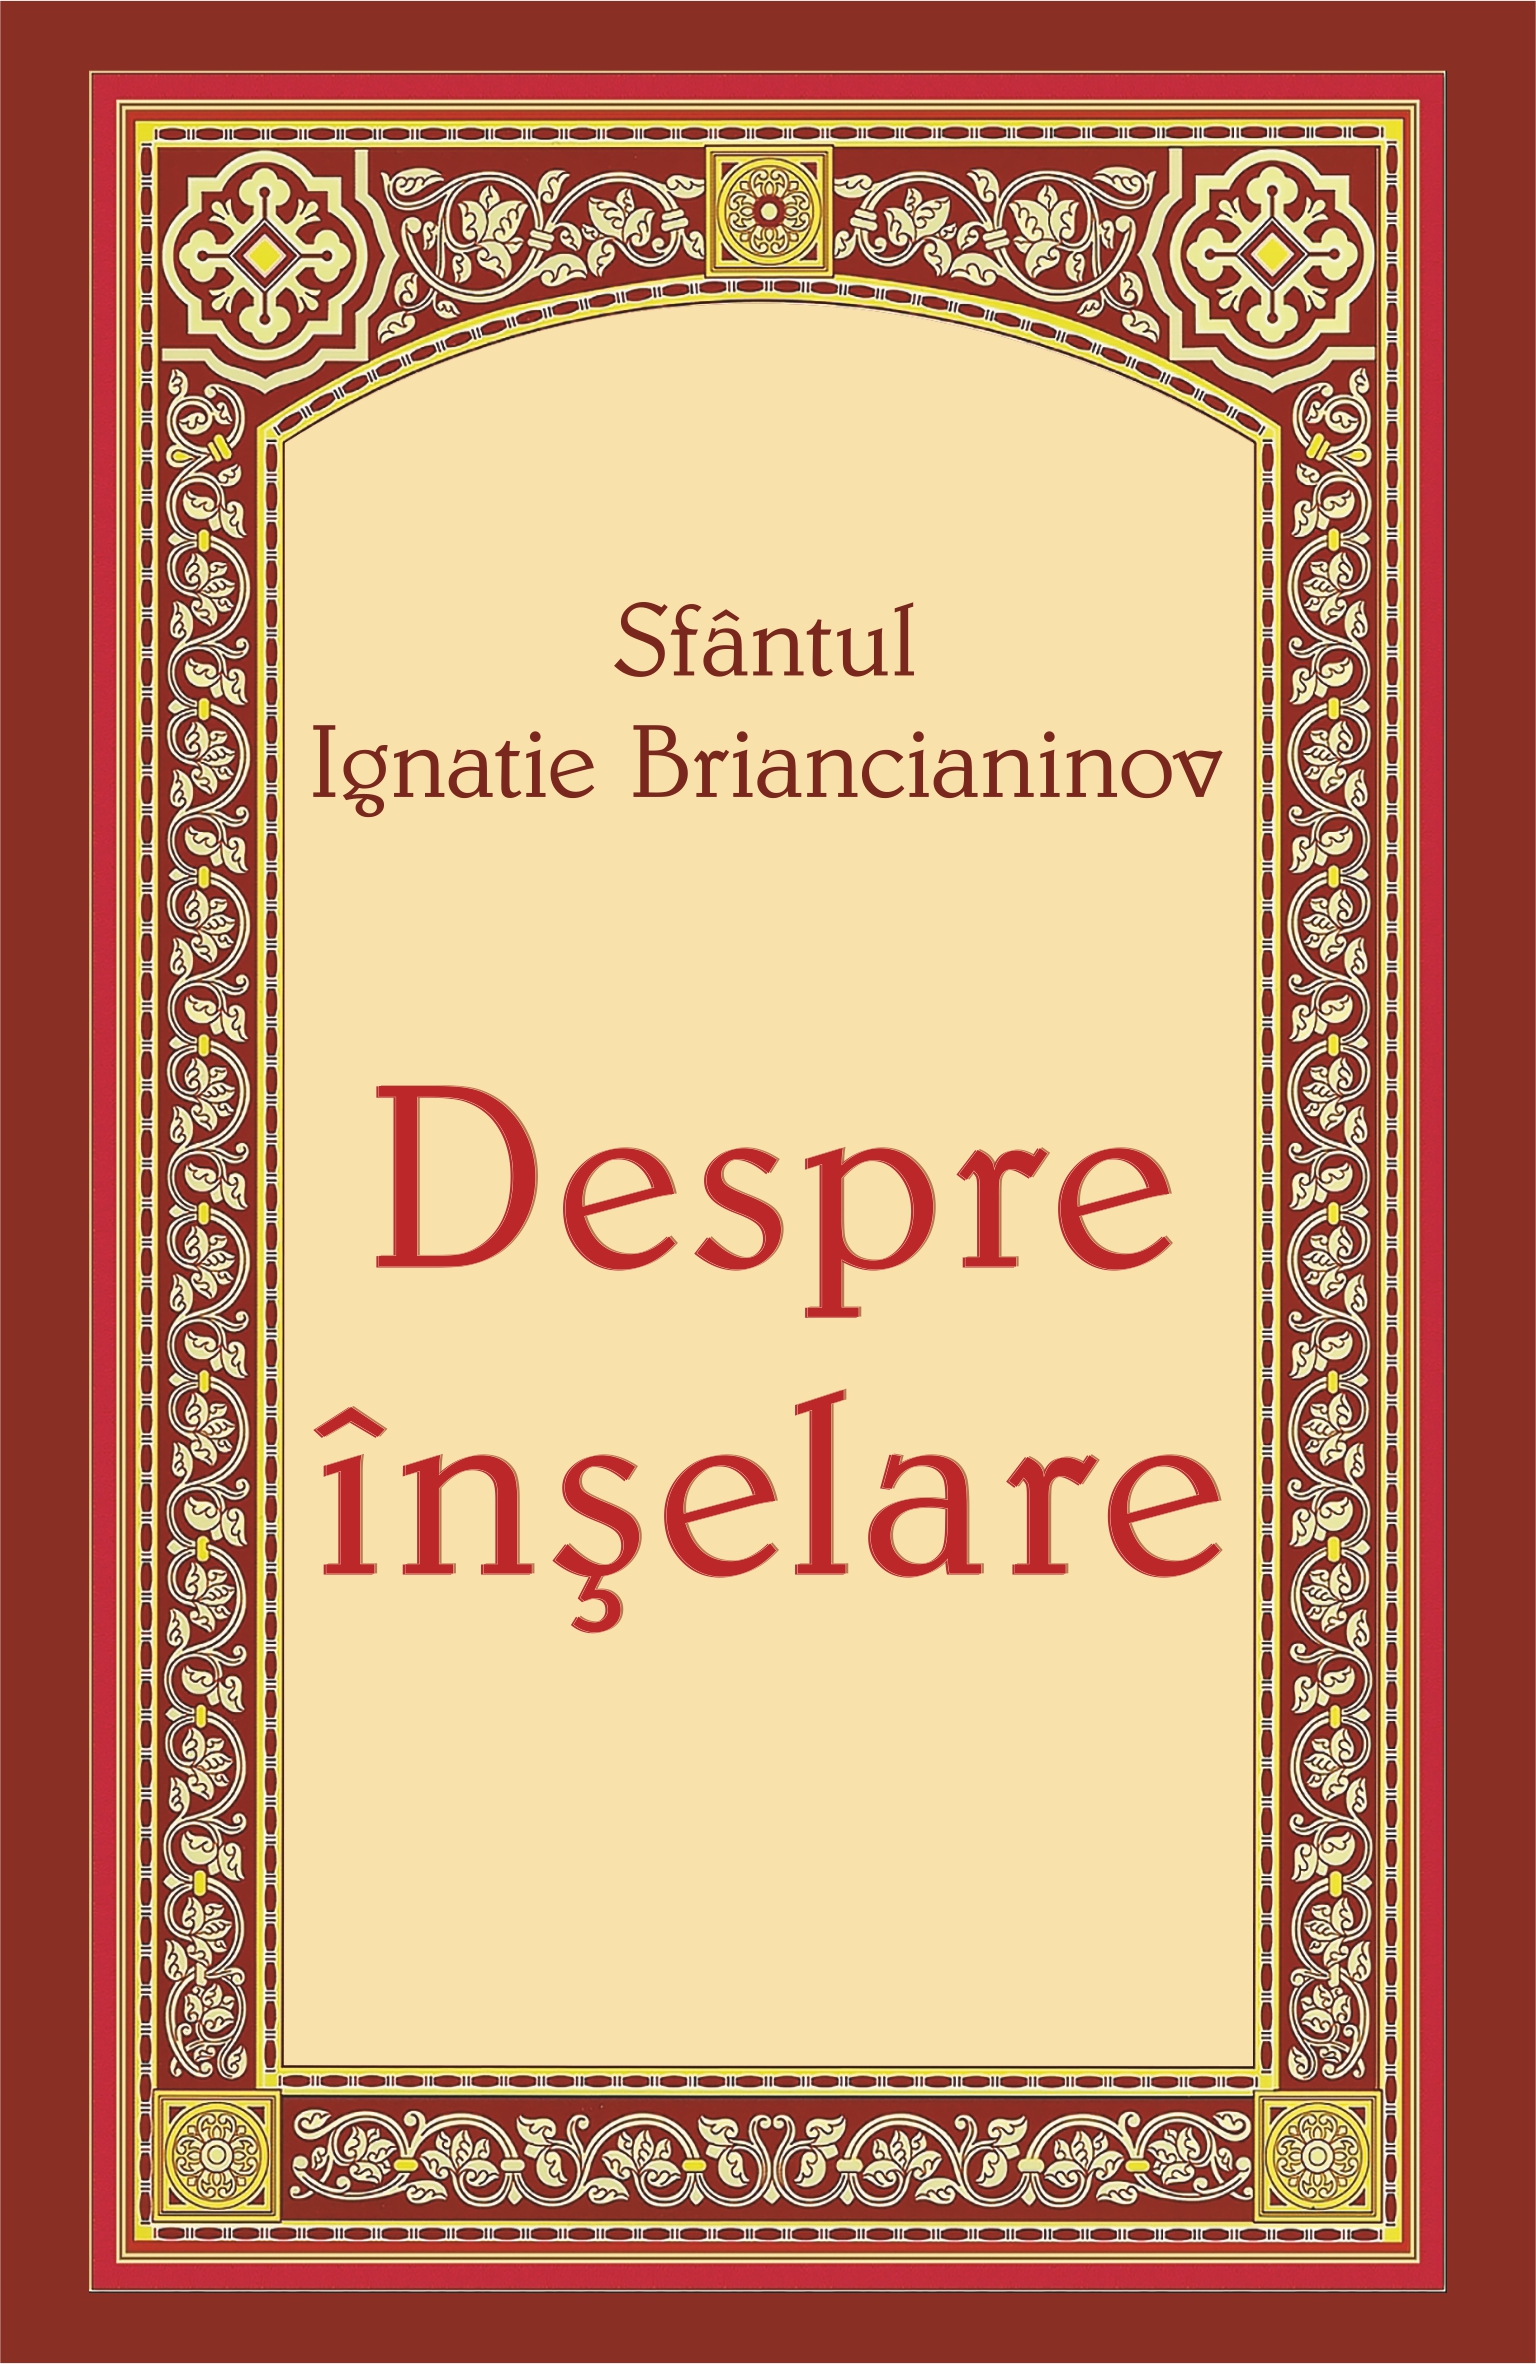 Despre inselare - Sfantul Ignatie Briancianinov